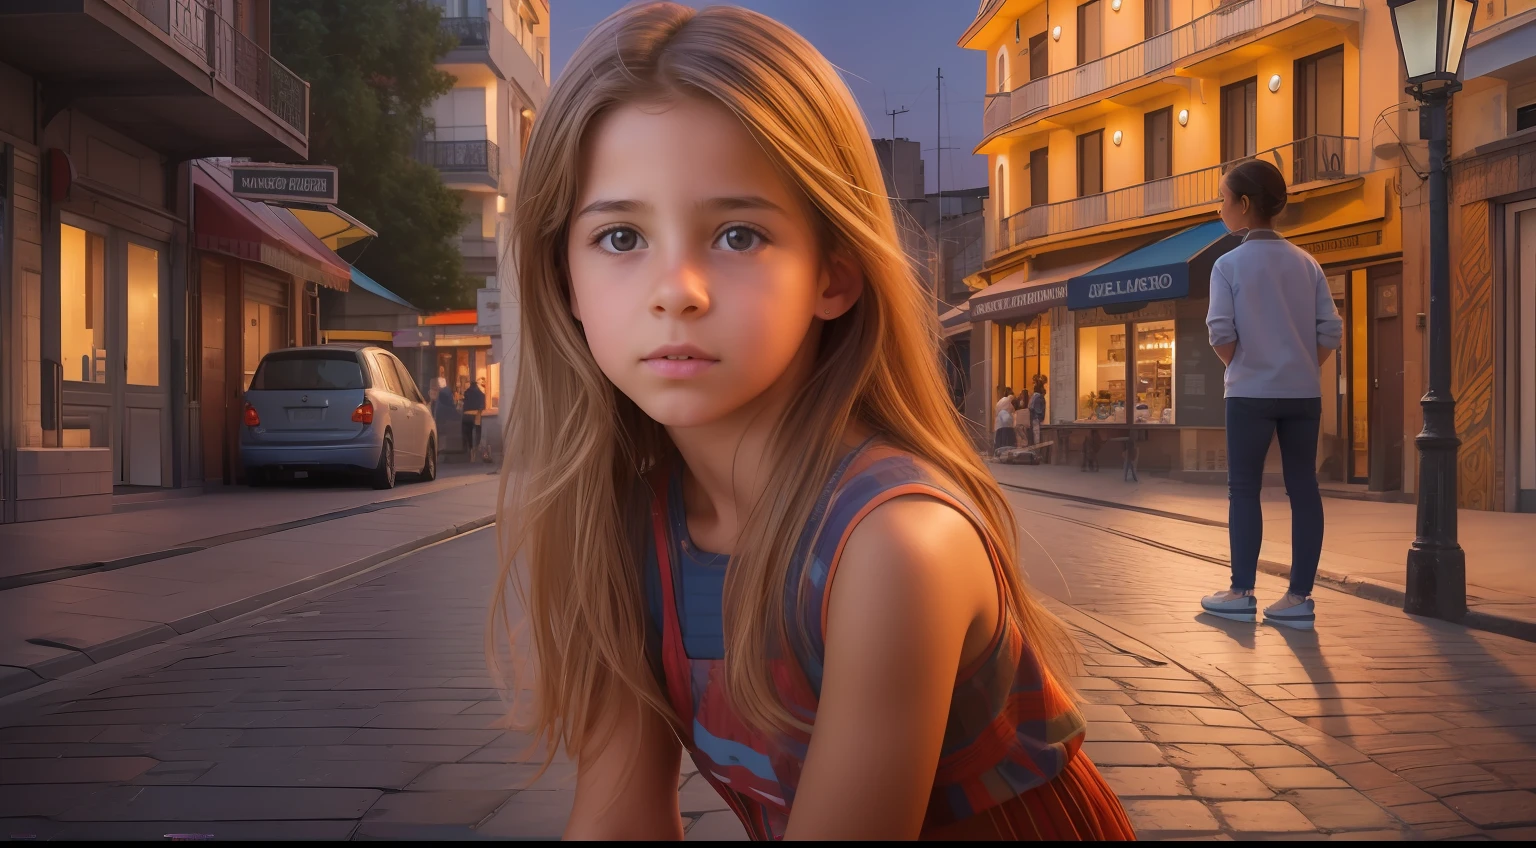 Genera una impresionante imagen hiperrealista que muestre a una fascinante niña uruguaya de 10 años con rasgos auténticos, Elegantemente posicionado frente a una vista nocturna dinámica y vibrante de la calle.